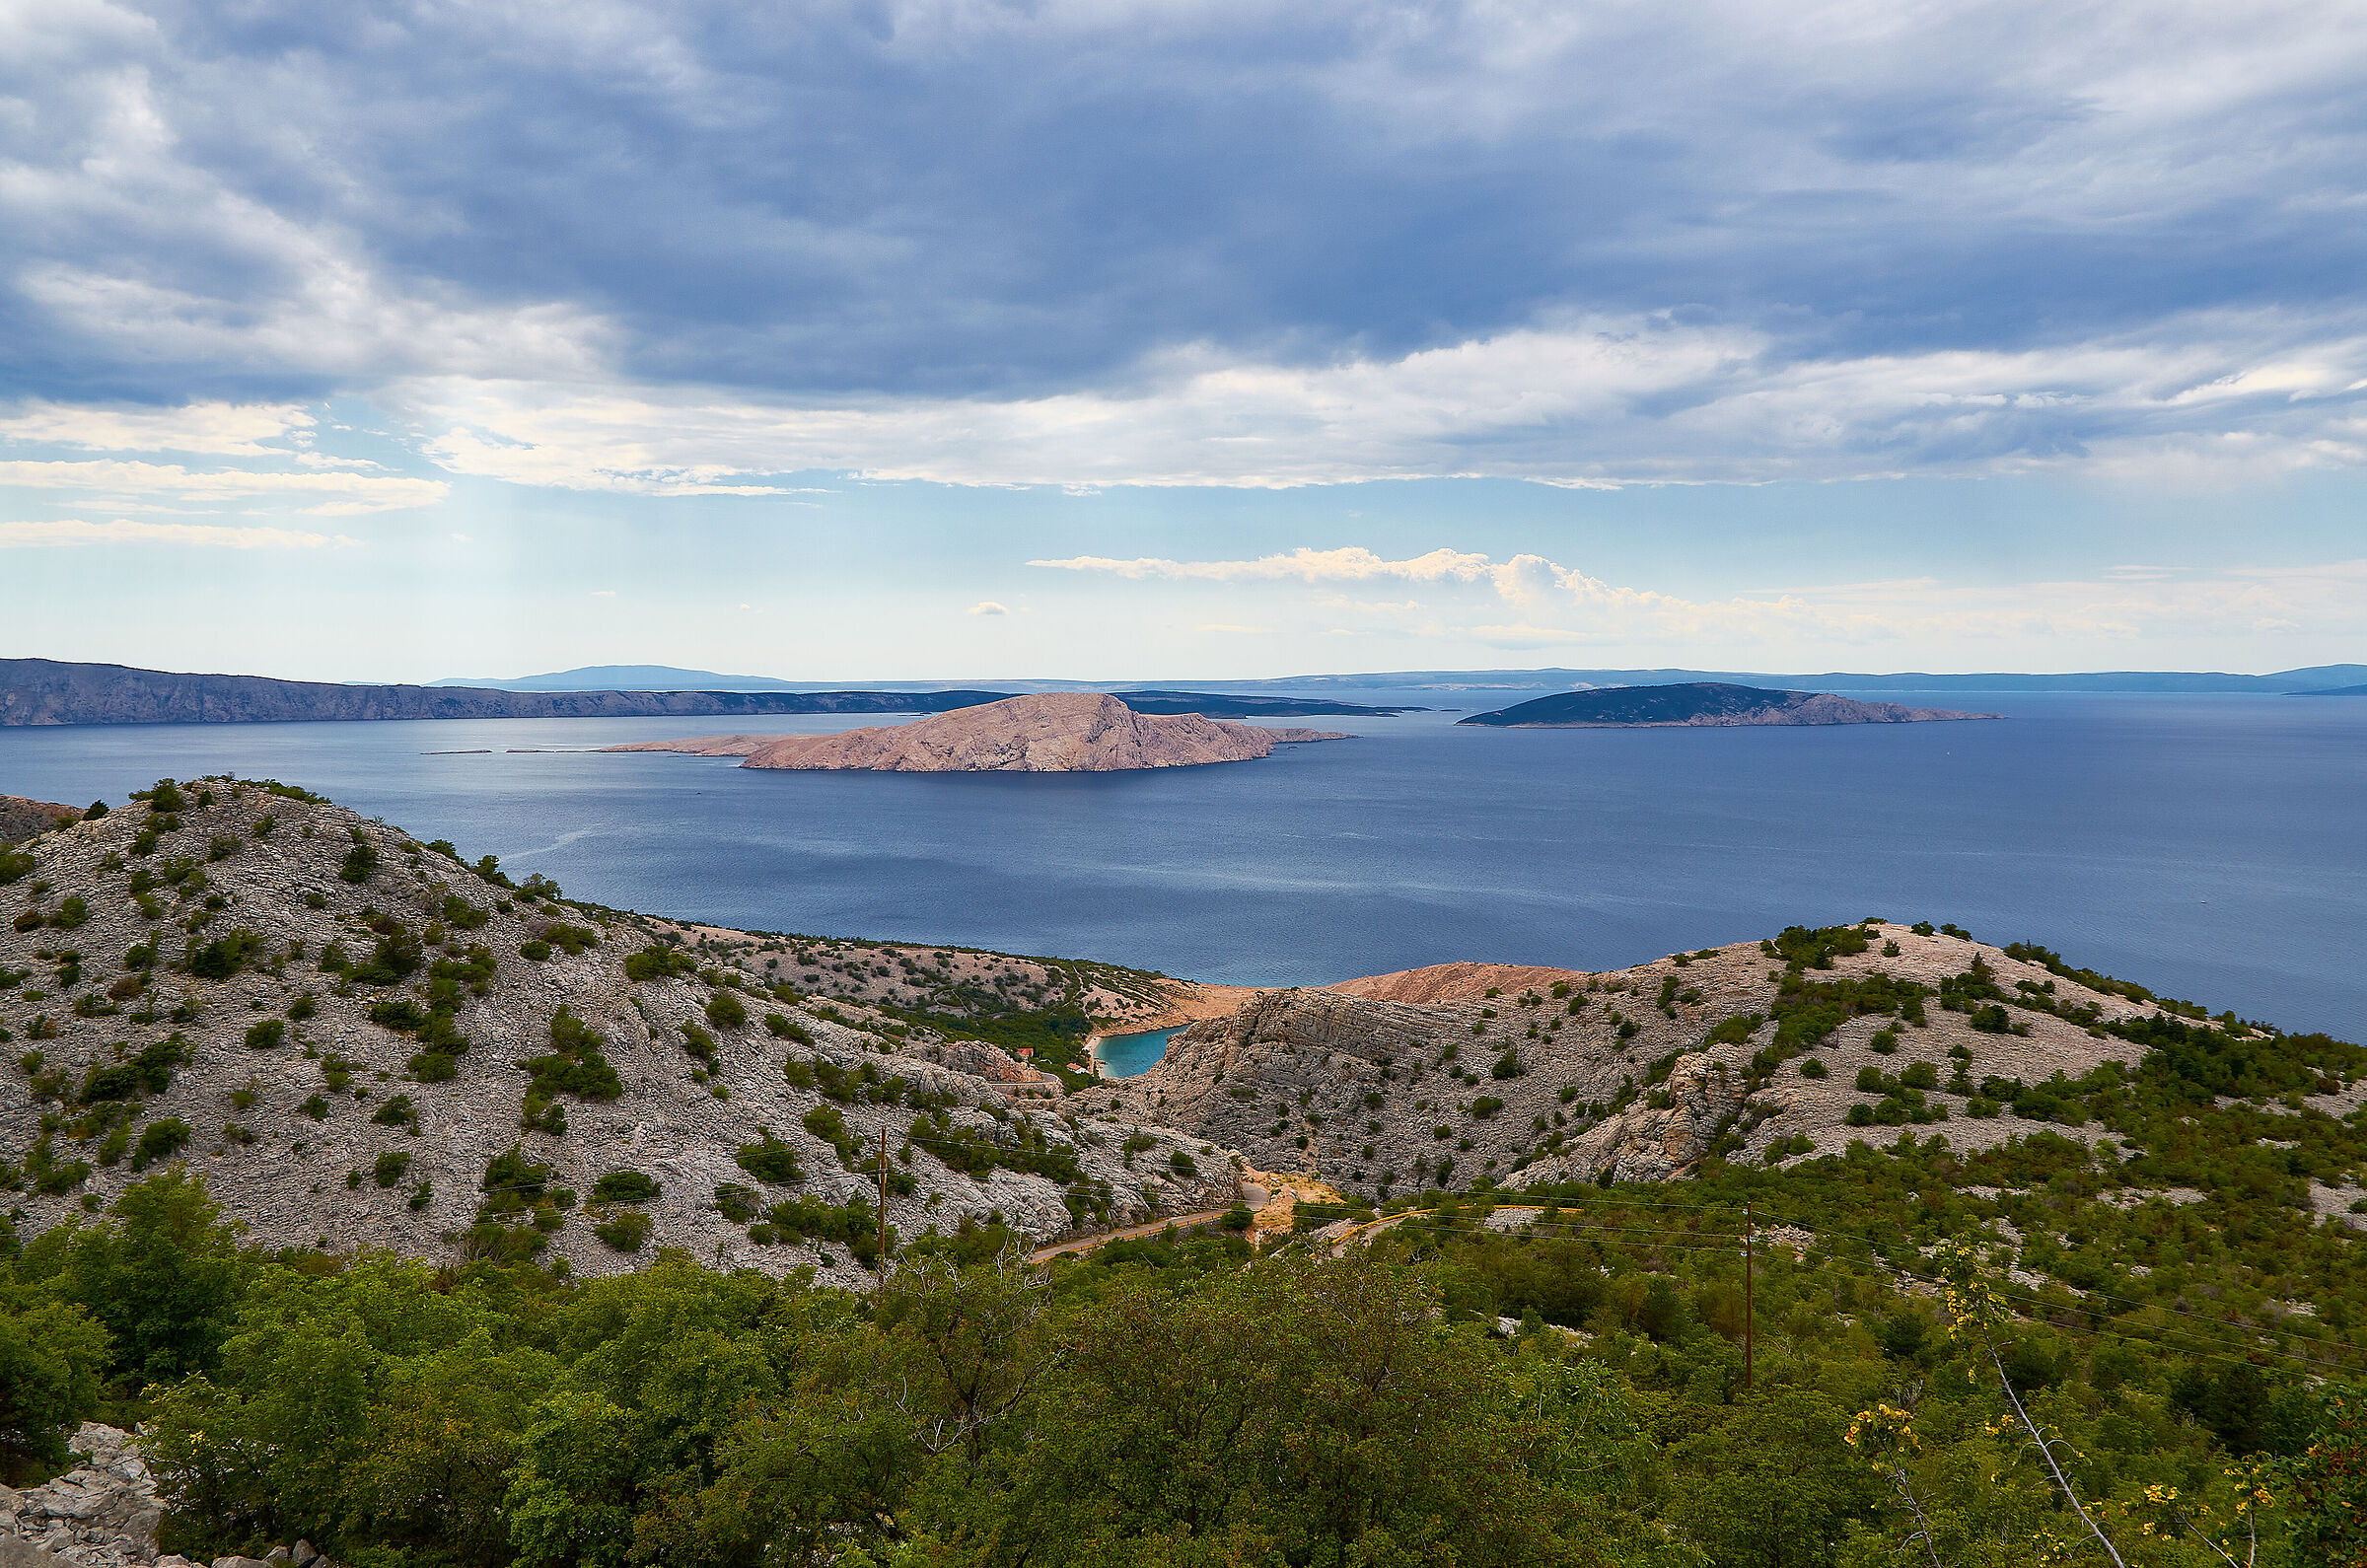 Dalmatian coast and Kvarner islands...